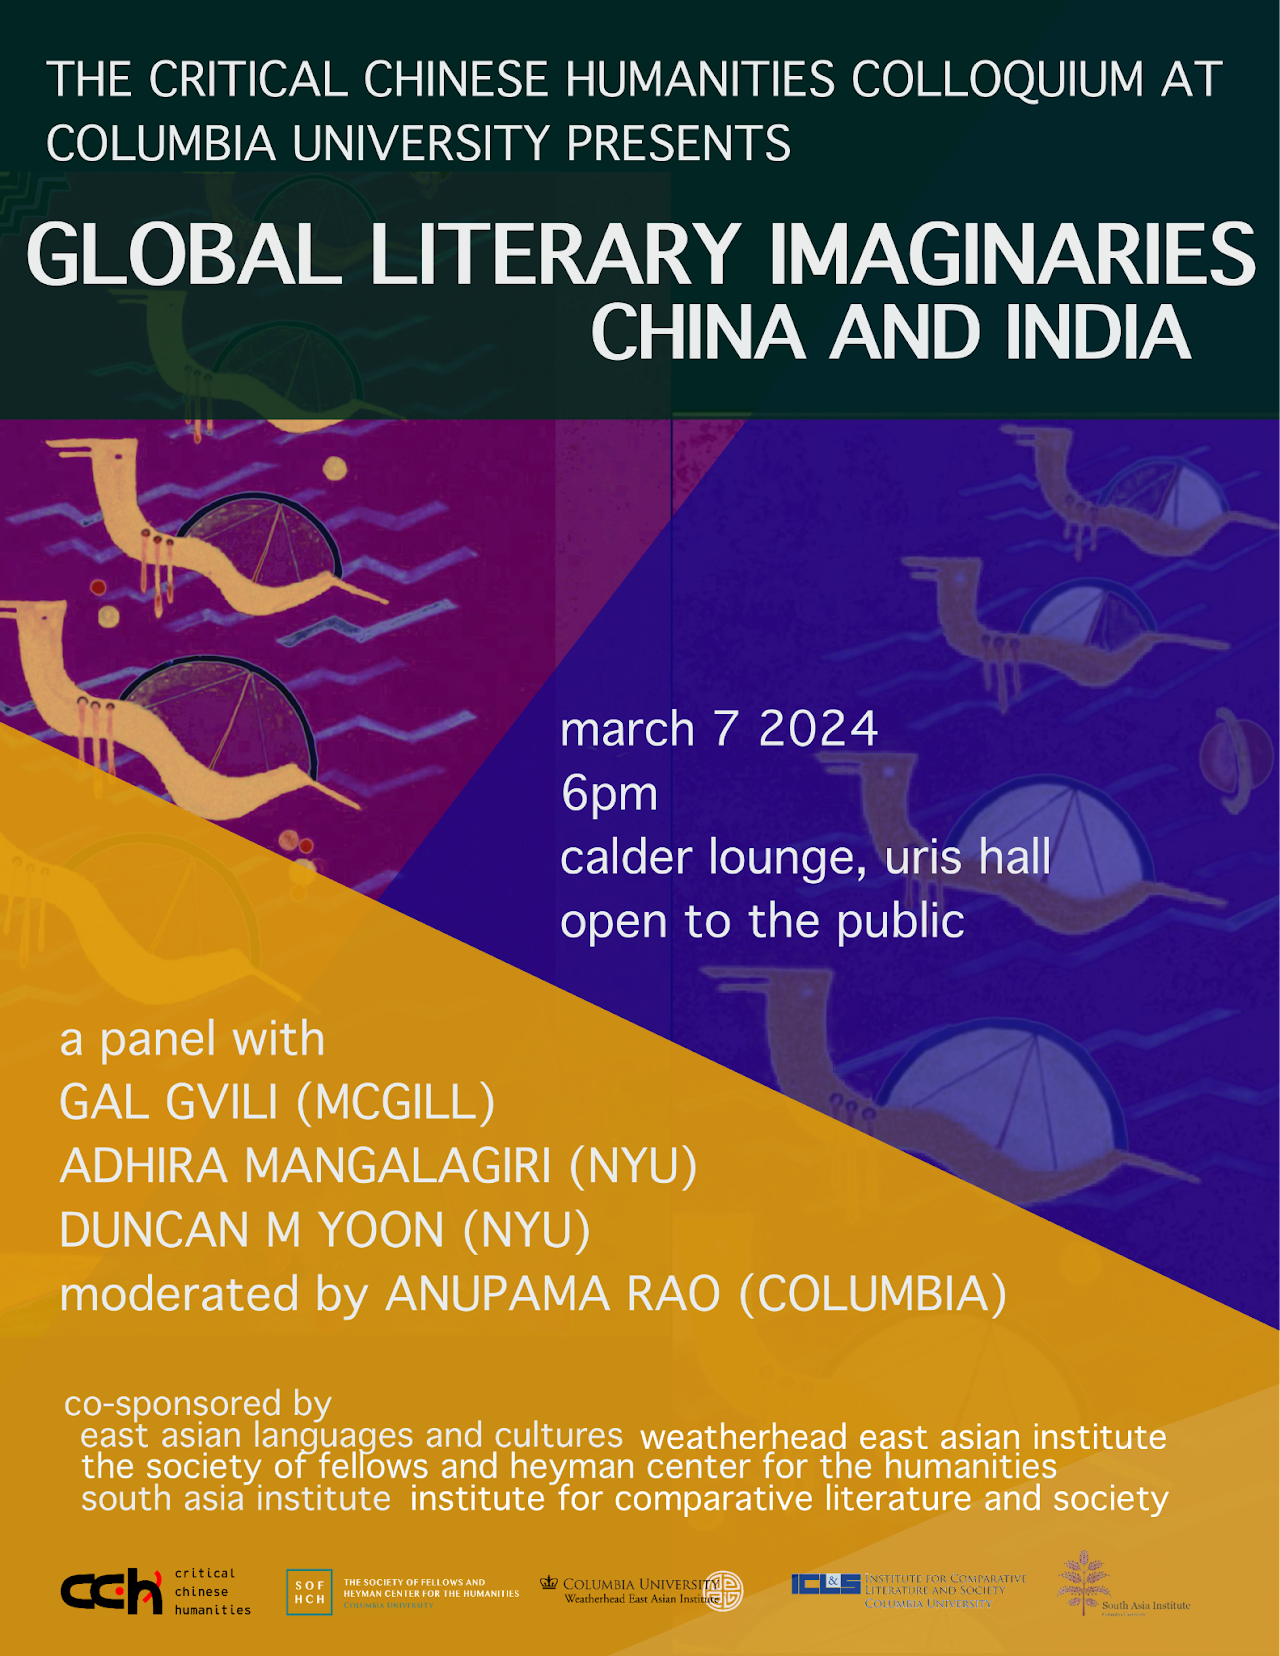 “Global Literary Imaginaries: China and India”